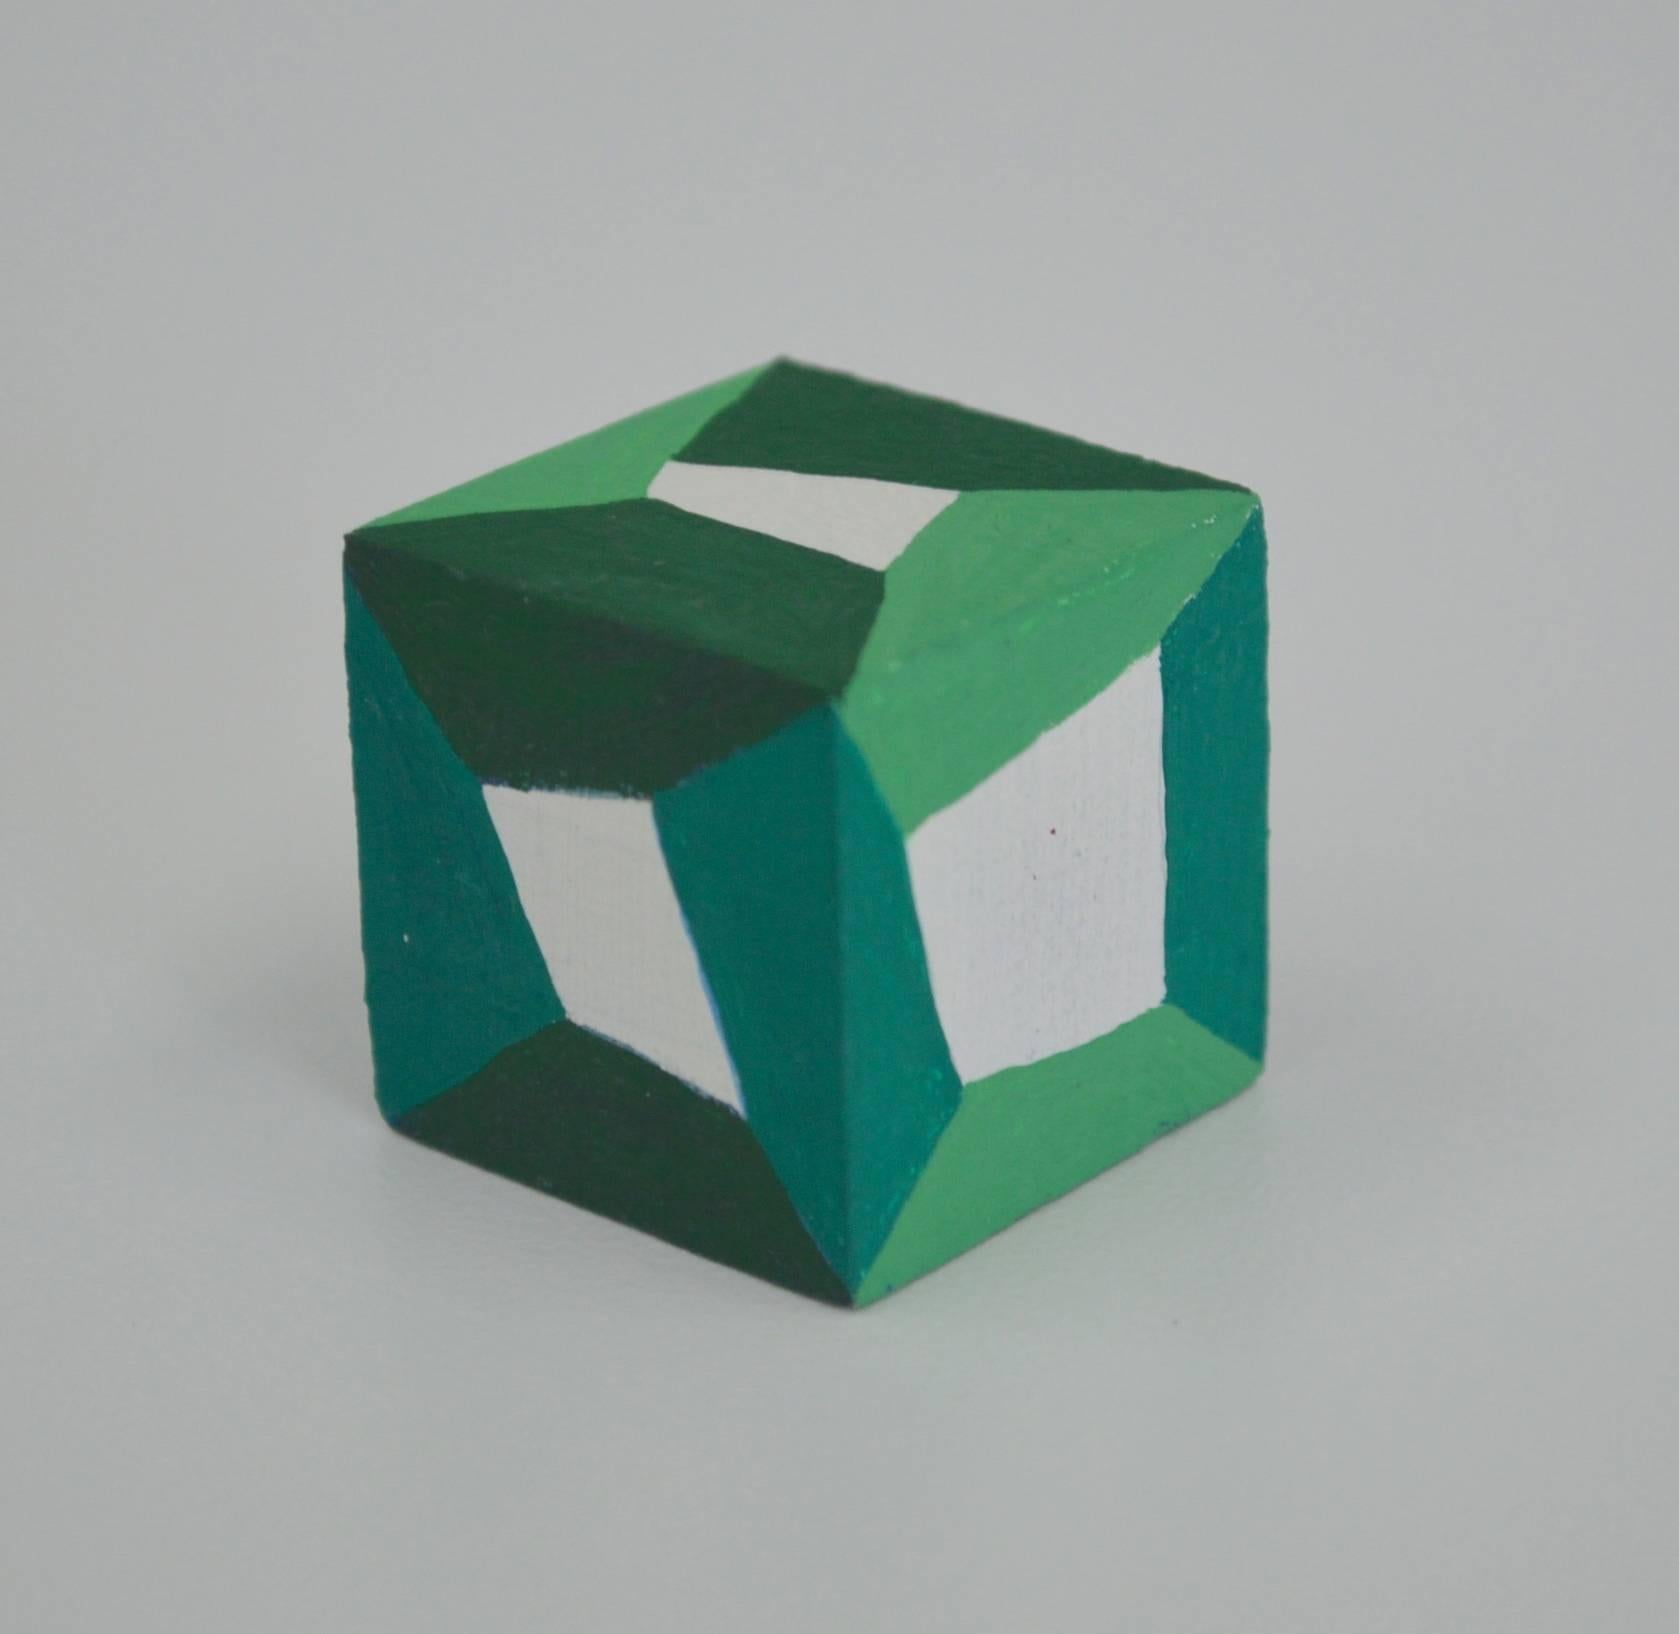 Karen Schiff, Hypercubic, 2016, Wood, Gouache